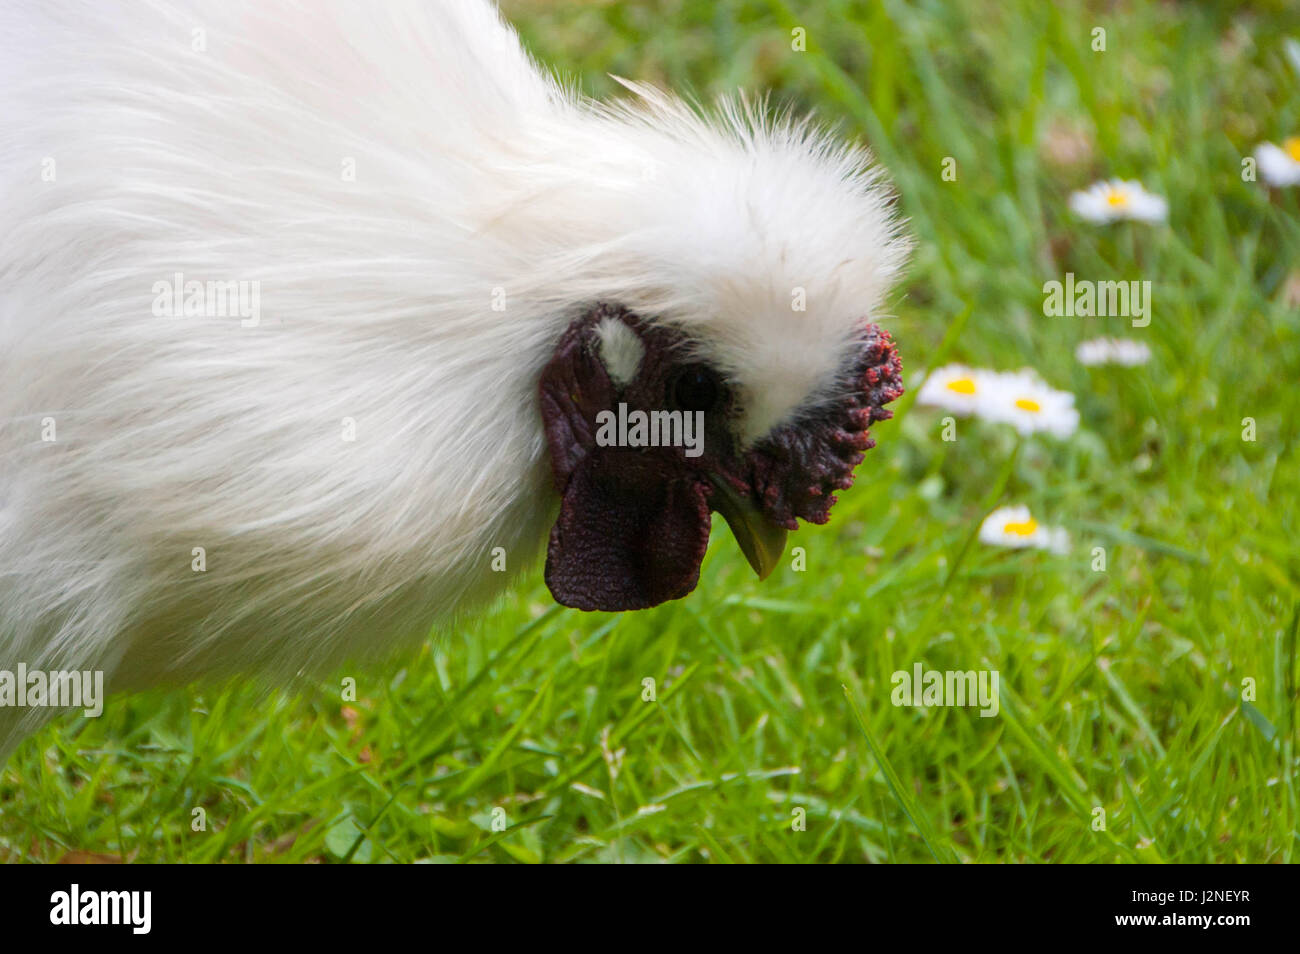 La Silkie es una raza de gallina nombrado por su plumaje anormalmente suaves, que dicen que se sienten como seda y satén. Foto de stock